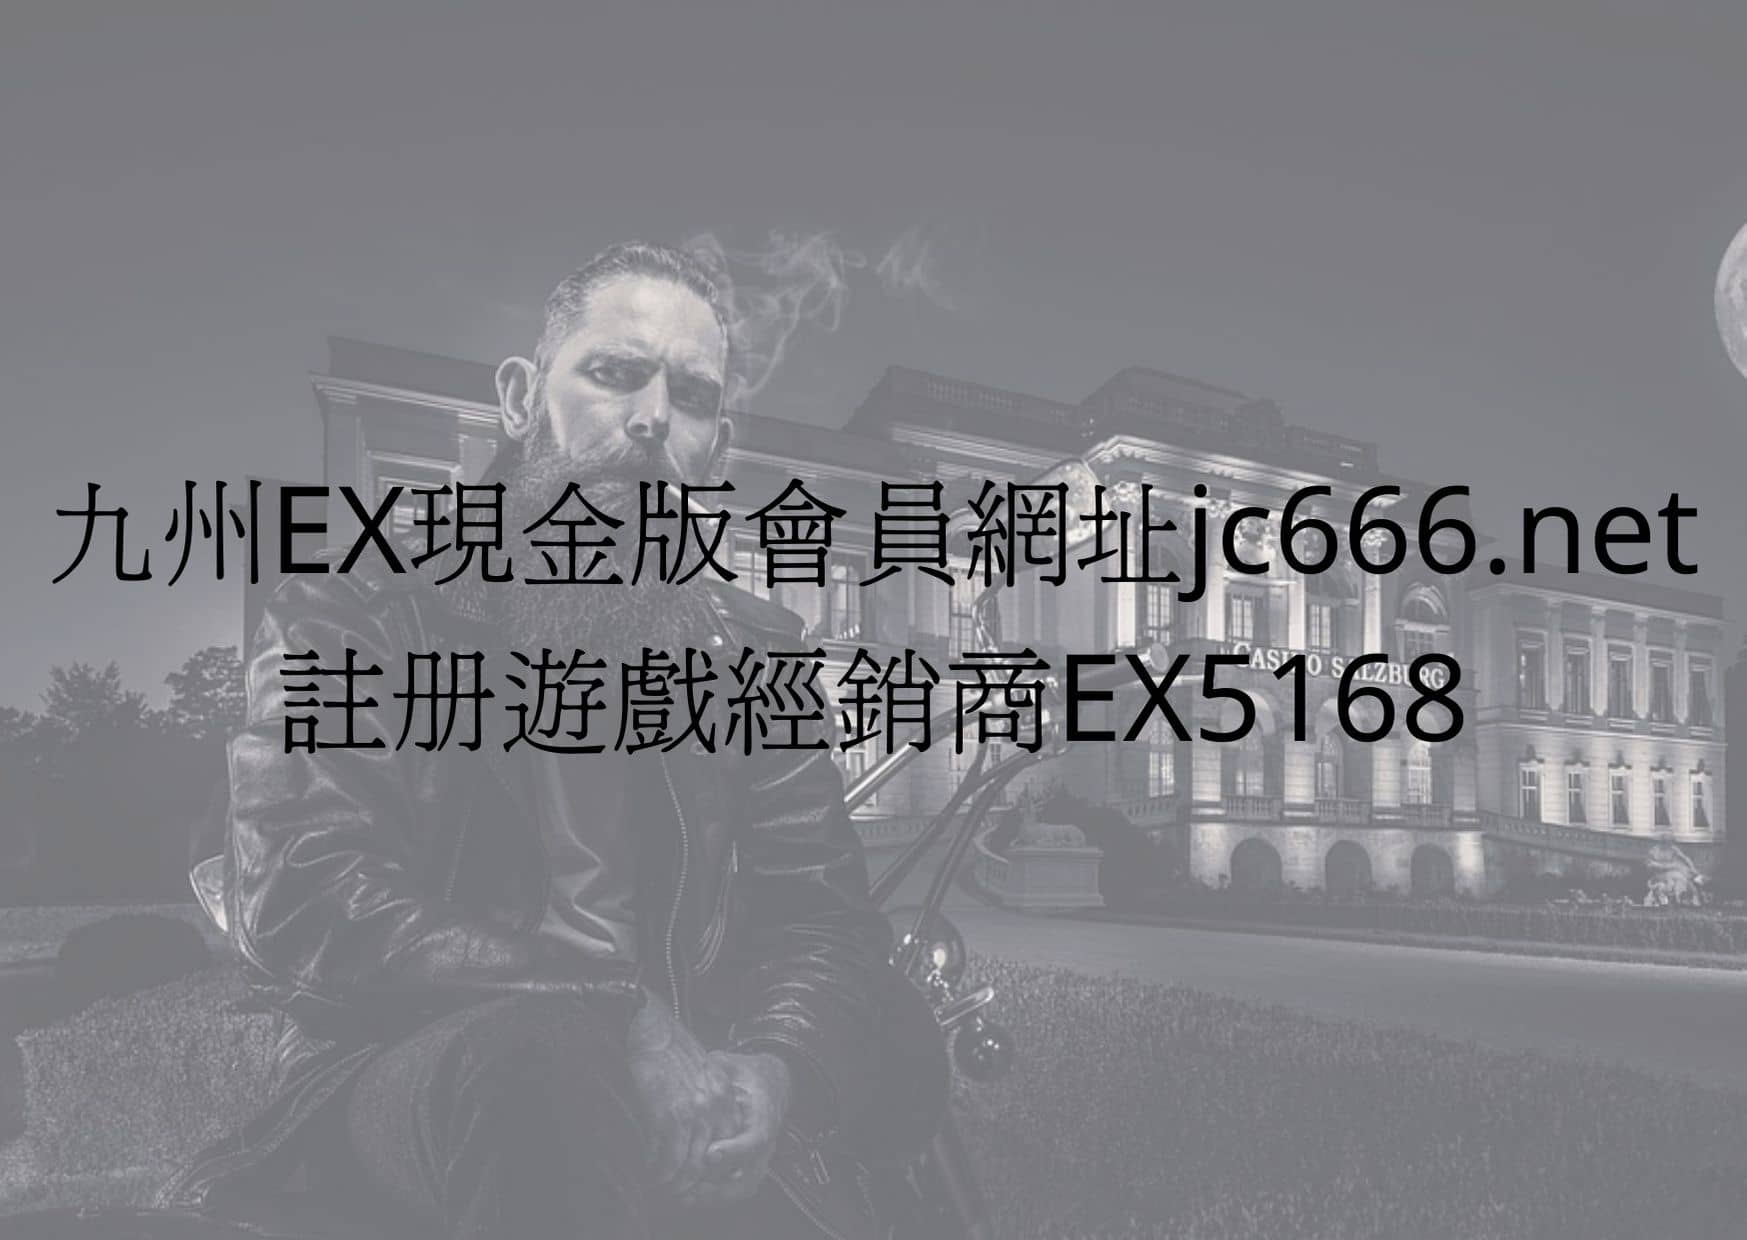 九州EX現金版會員網址jc666.net-註冊遊戲經銷商EX5168